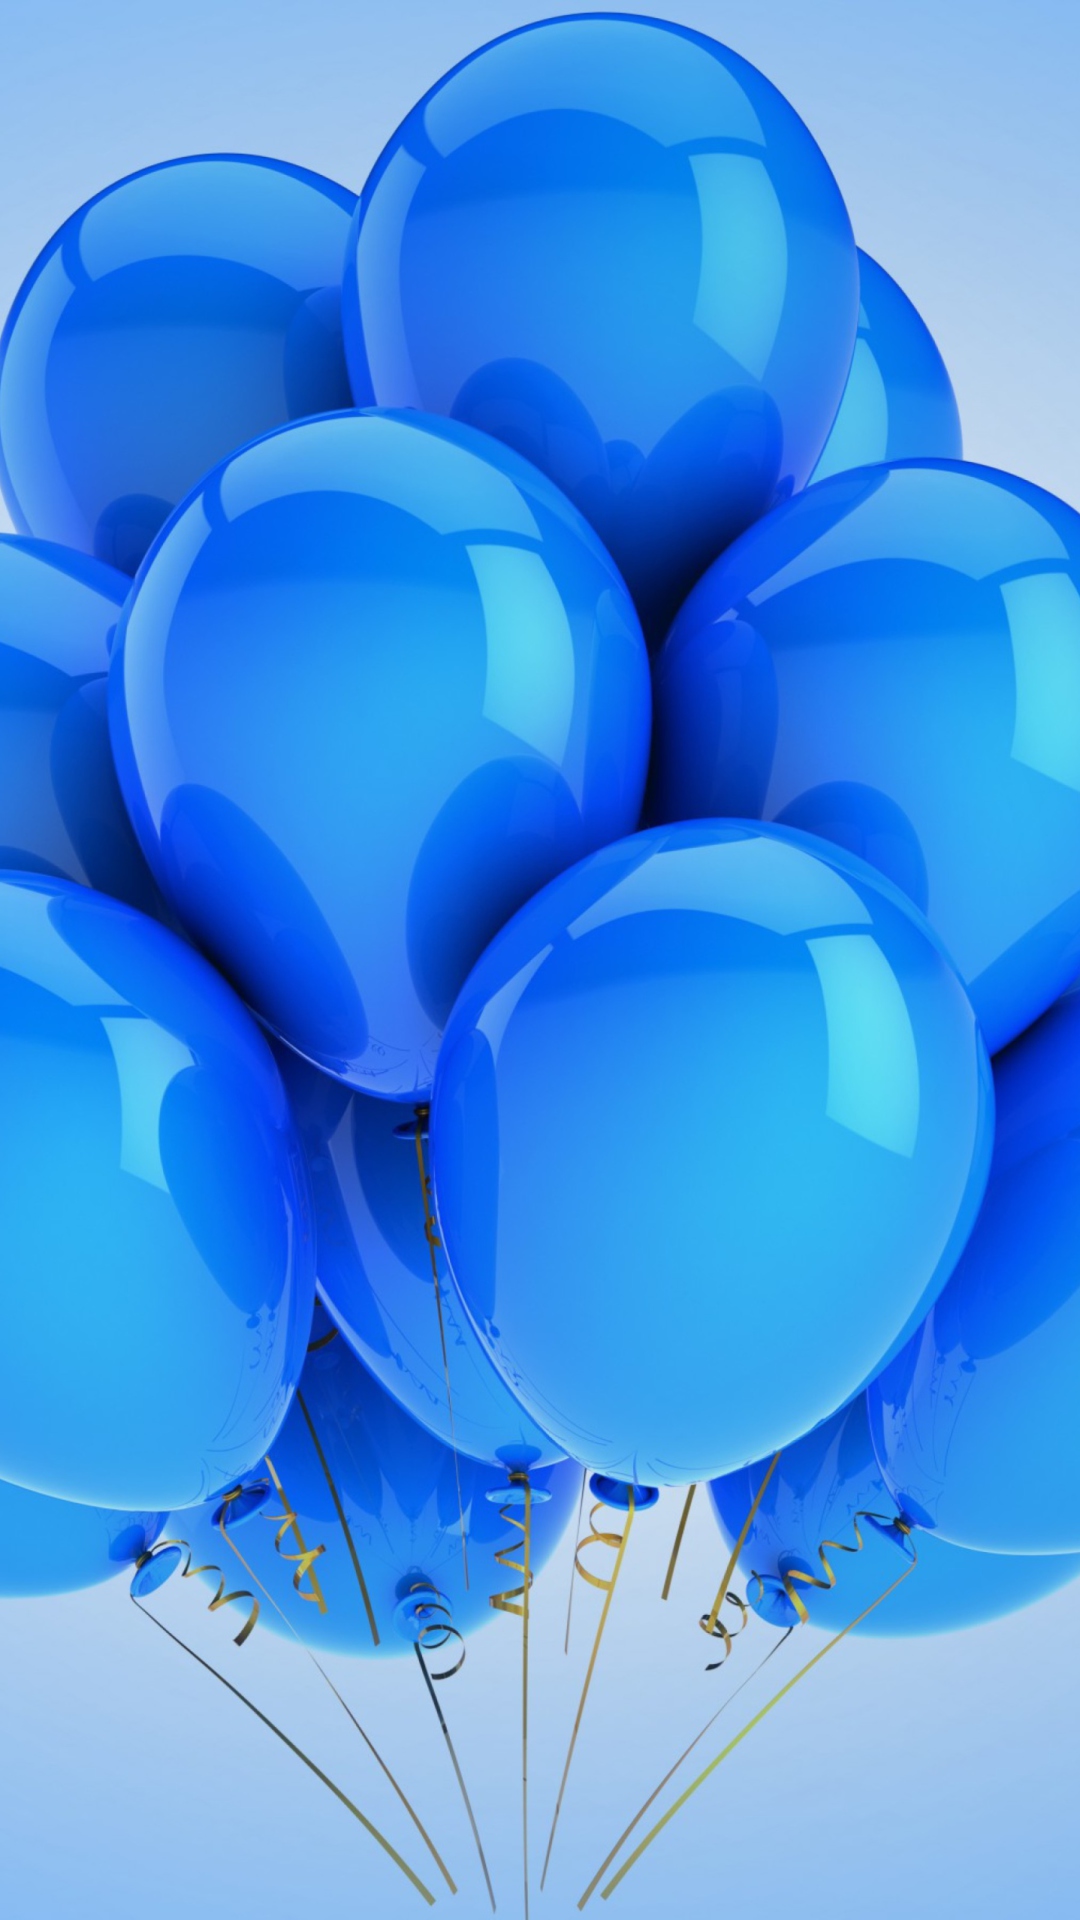 11 июня день рождения. Шары с днем рождения. С днём рождения шарики. Красивые шары на день рождения. Синие шары.